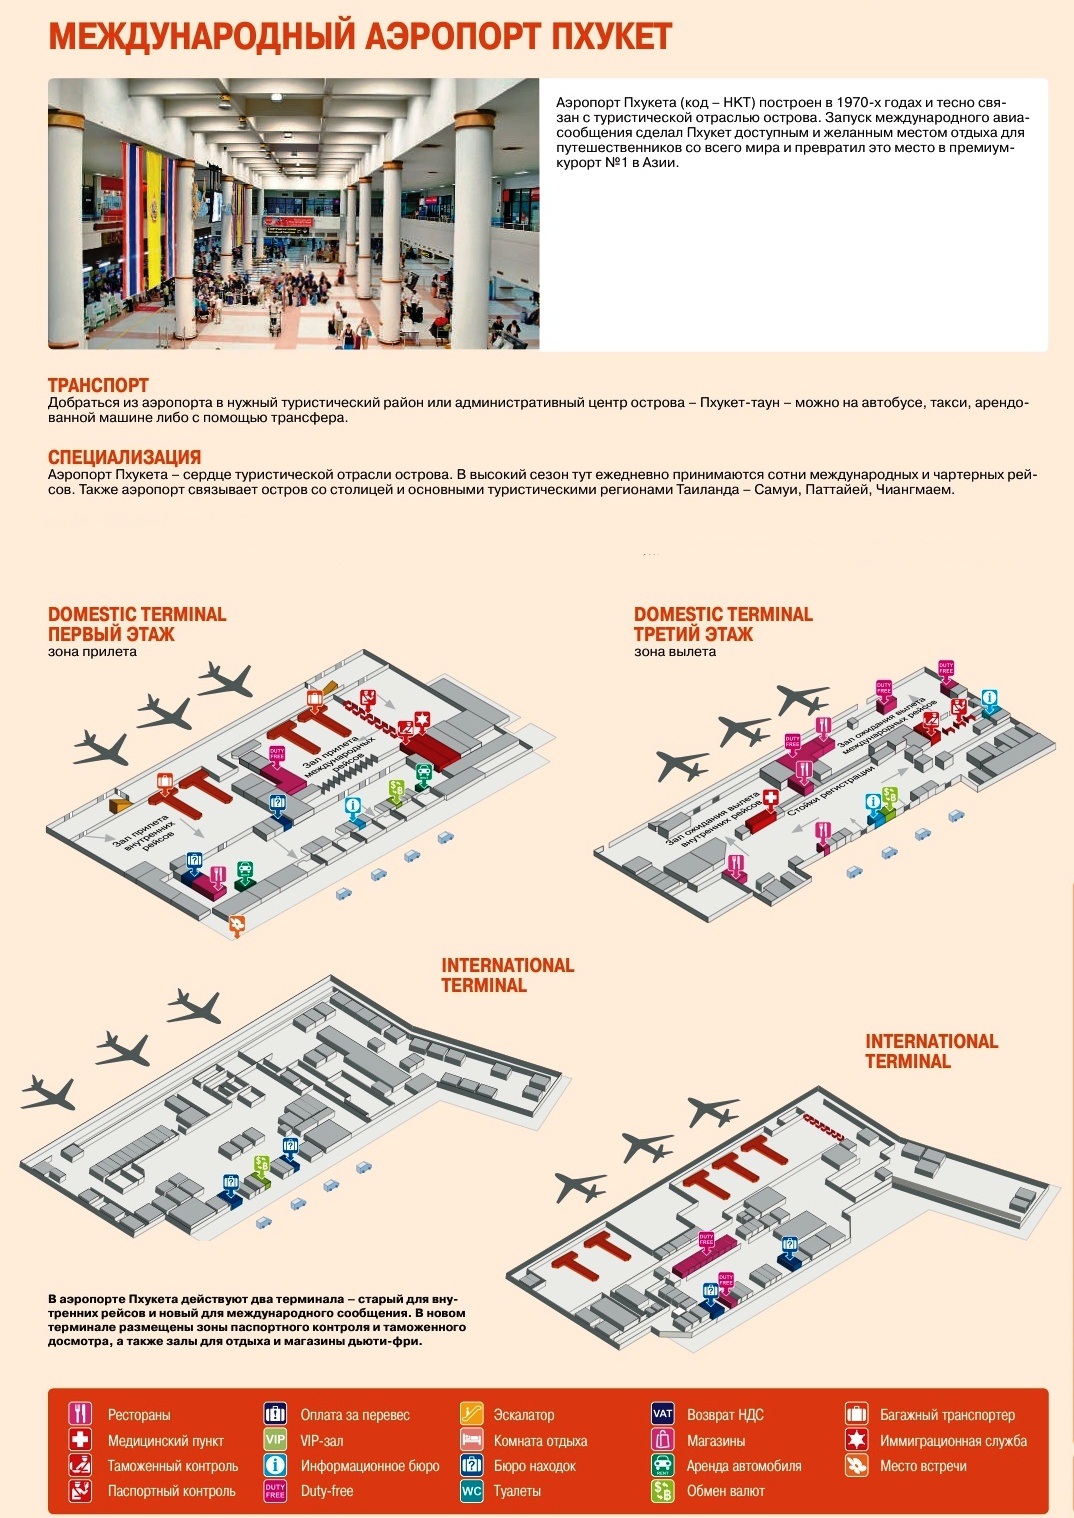 Схема Phuket International Airport